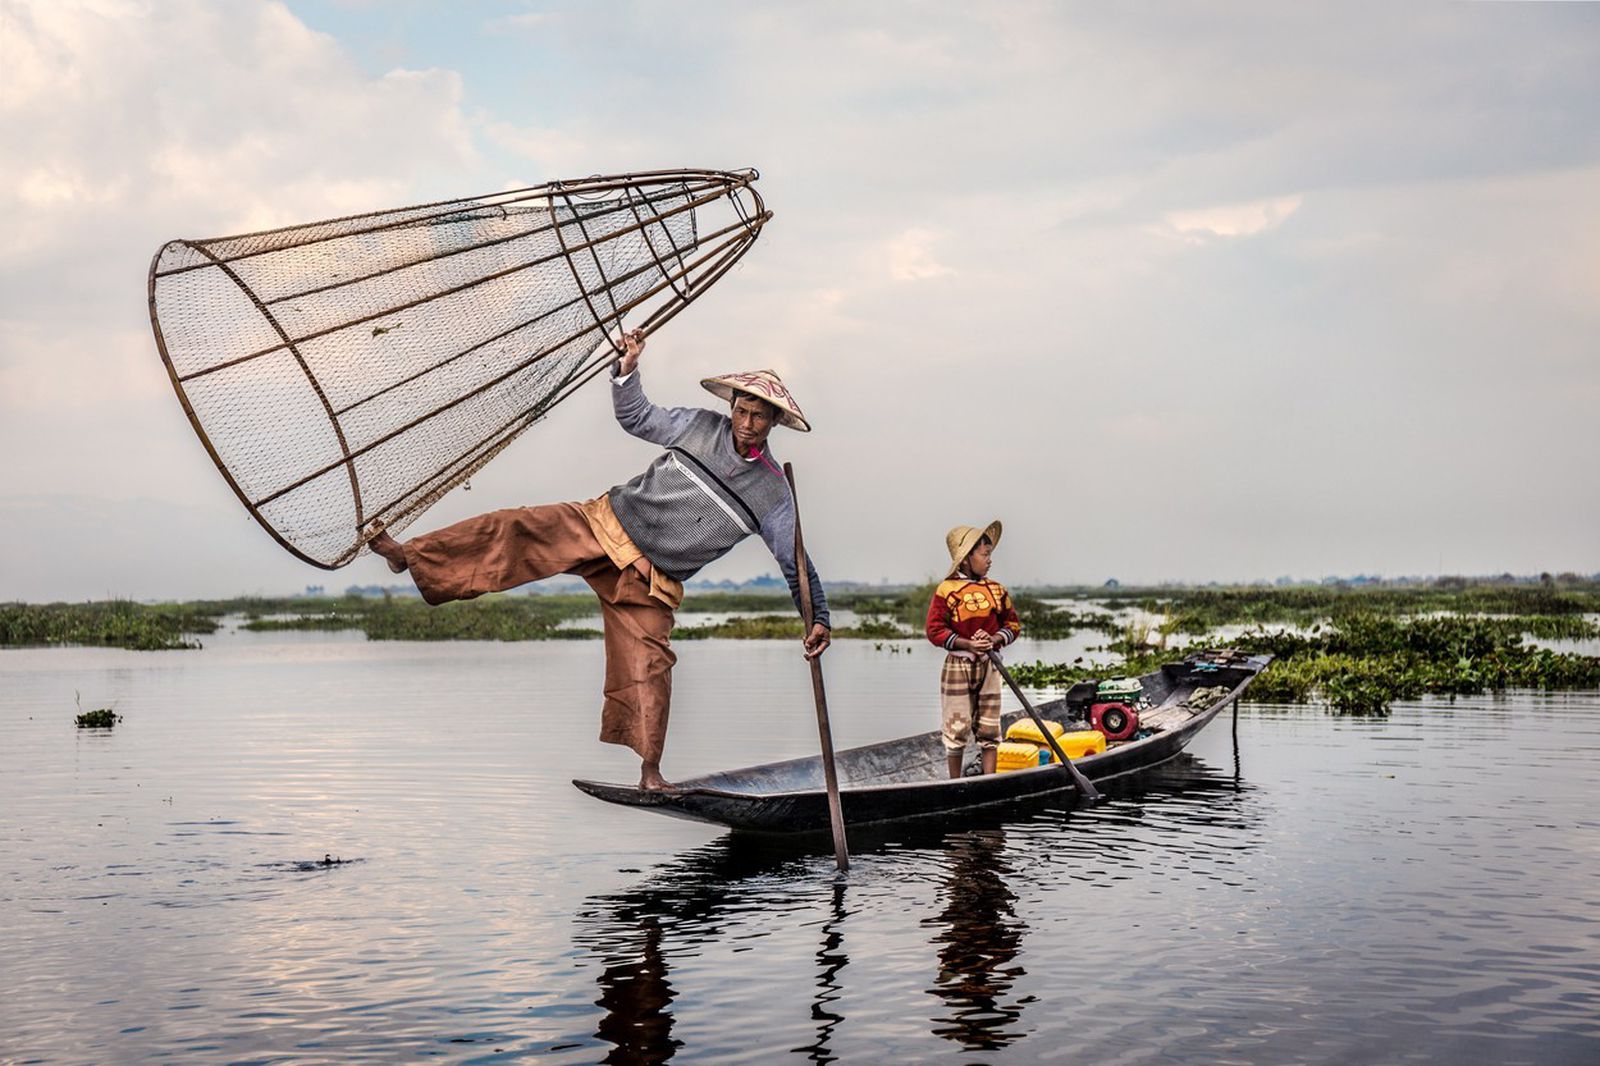 Луѓе од езерото: Необичен народ кој преживува благодарение на акробатиката на вода